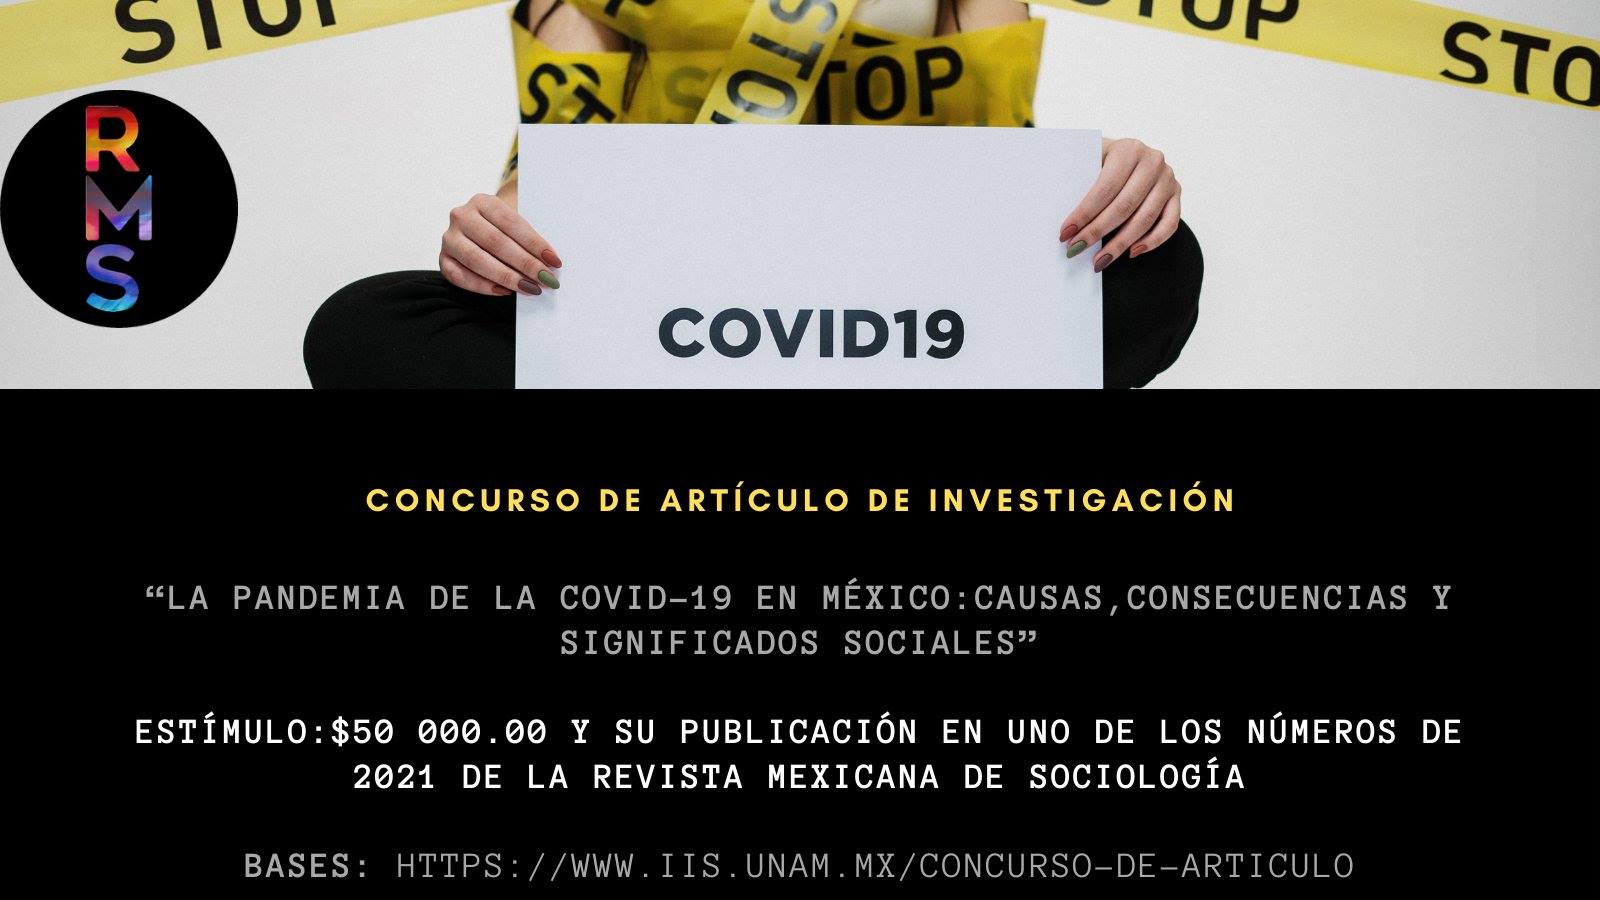 EN AGENDHA | Concurso de artículo de investigación “La pandemia de la Covid-19 en México: causas, consecuencias y significados sociales”